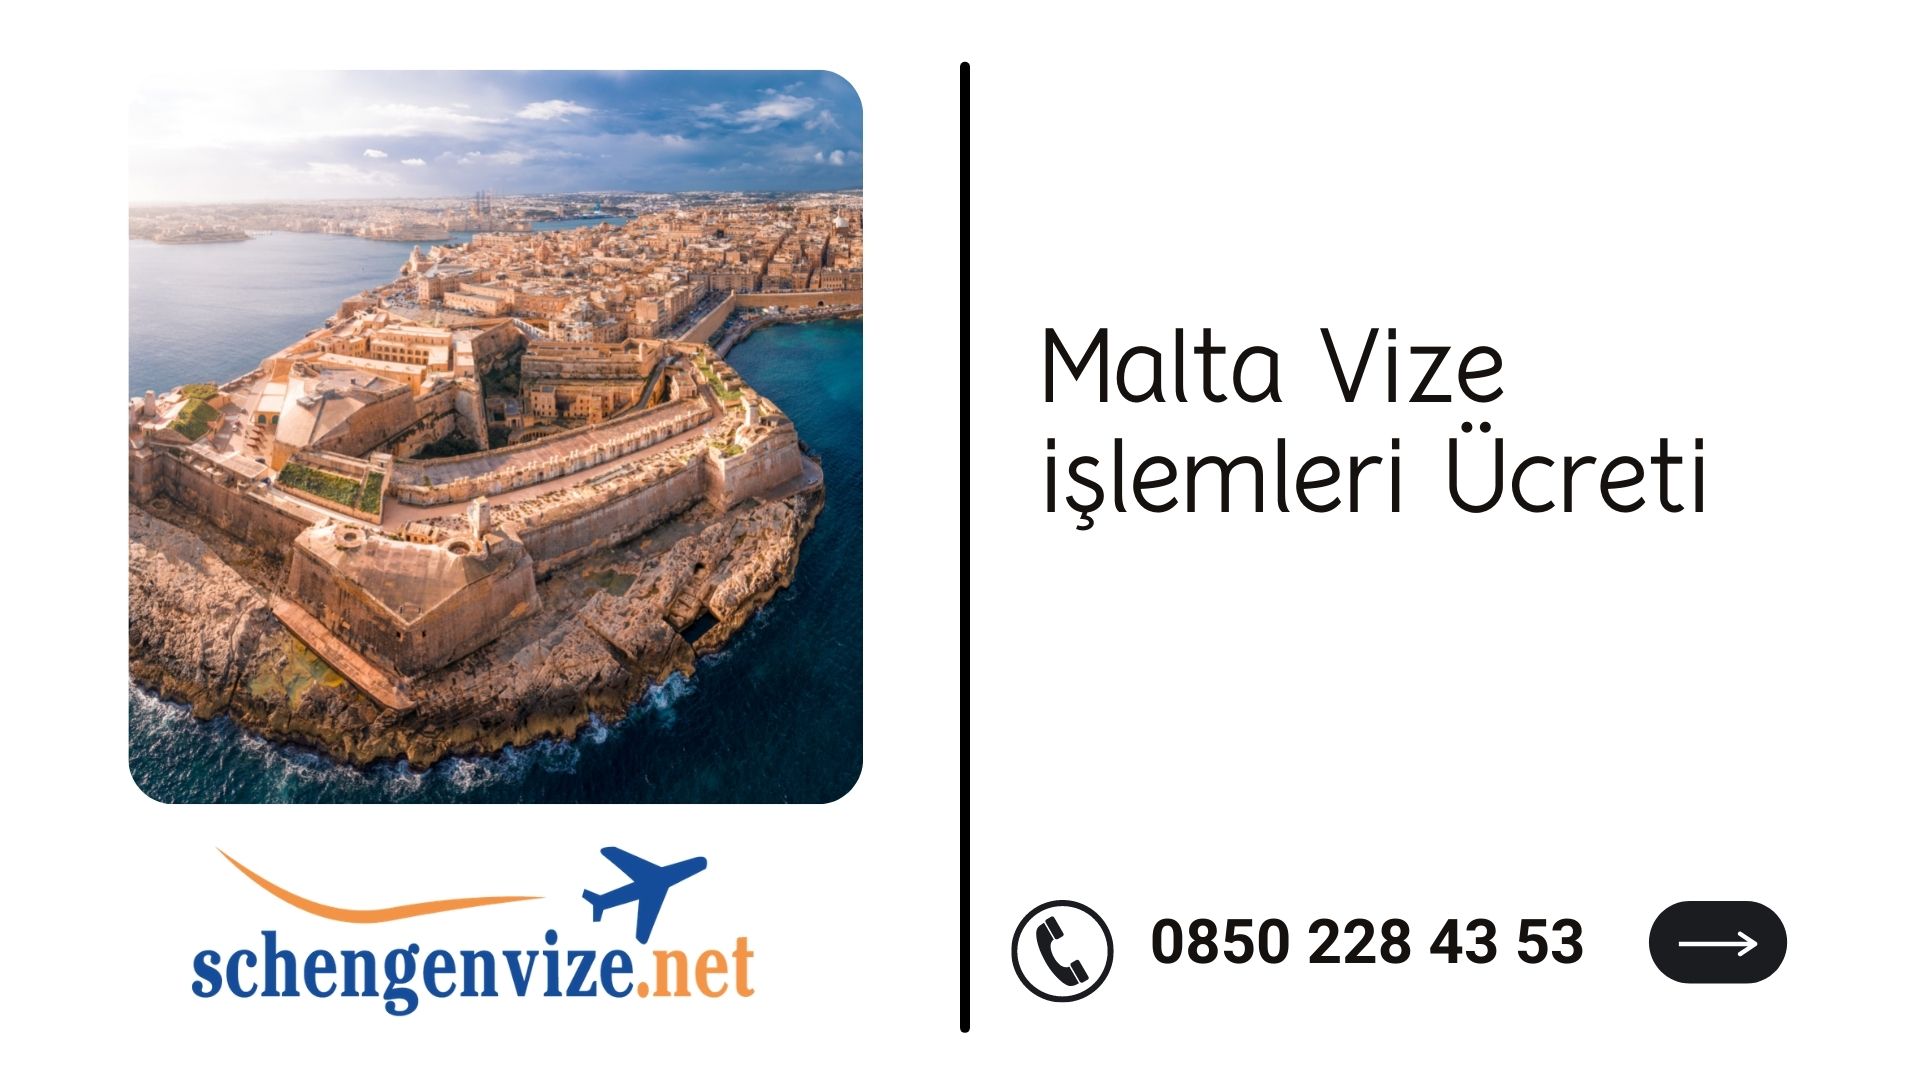 Malta Vize işlemleri Ücreti